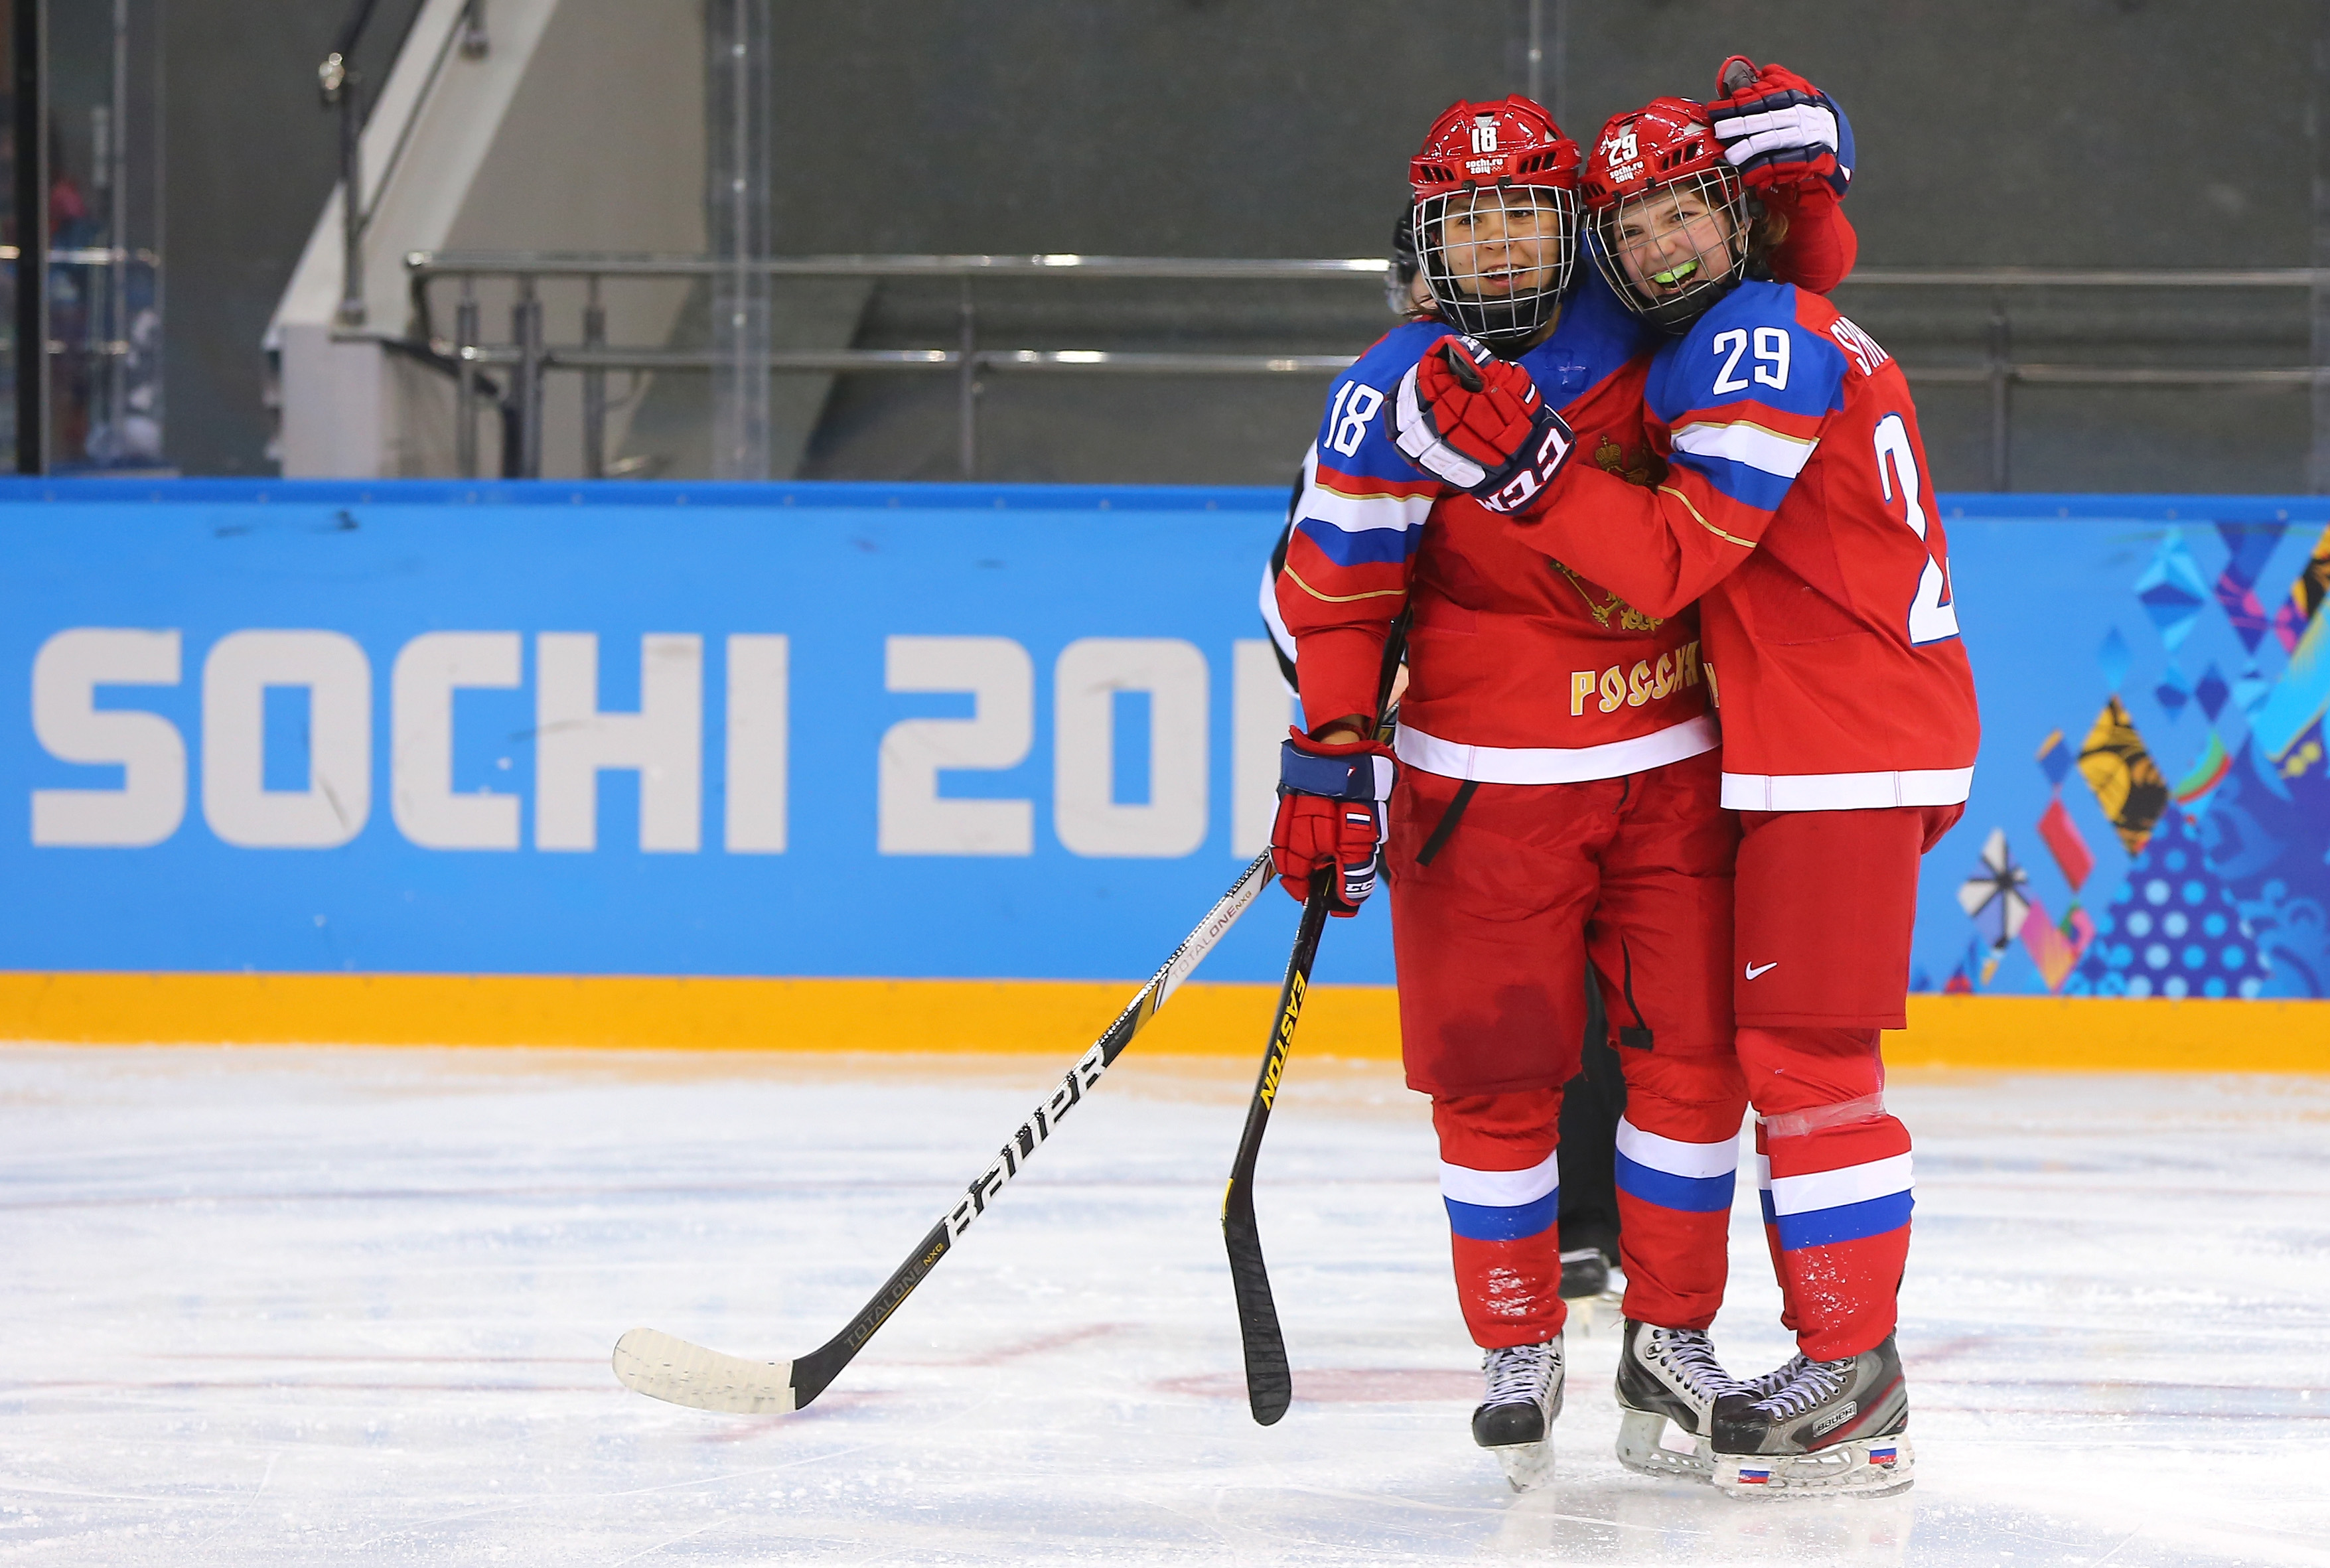 Ice Hockey - Winter Olympics Day 9 - Russia v Japan